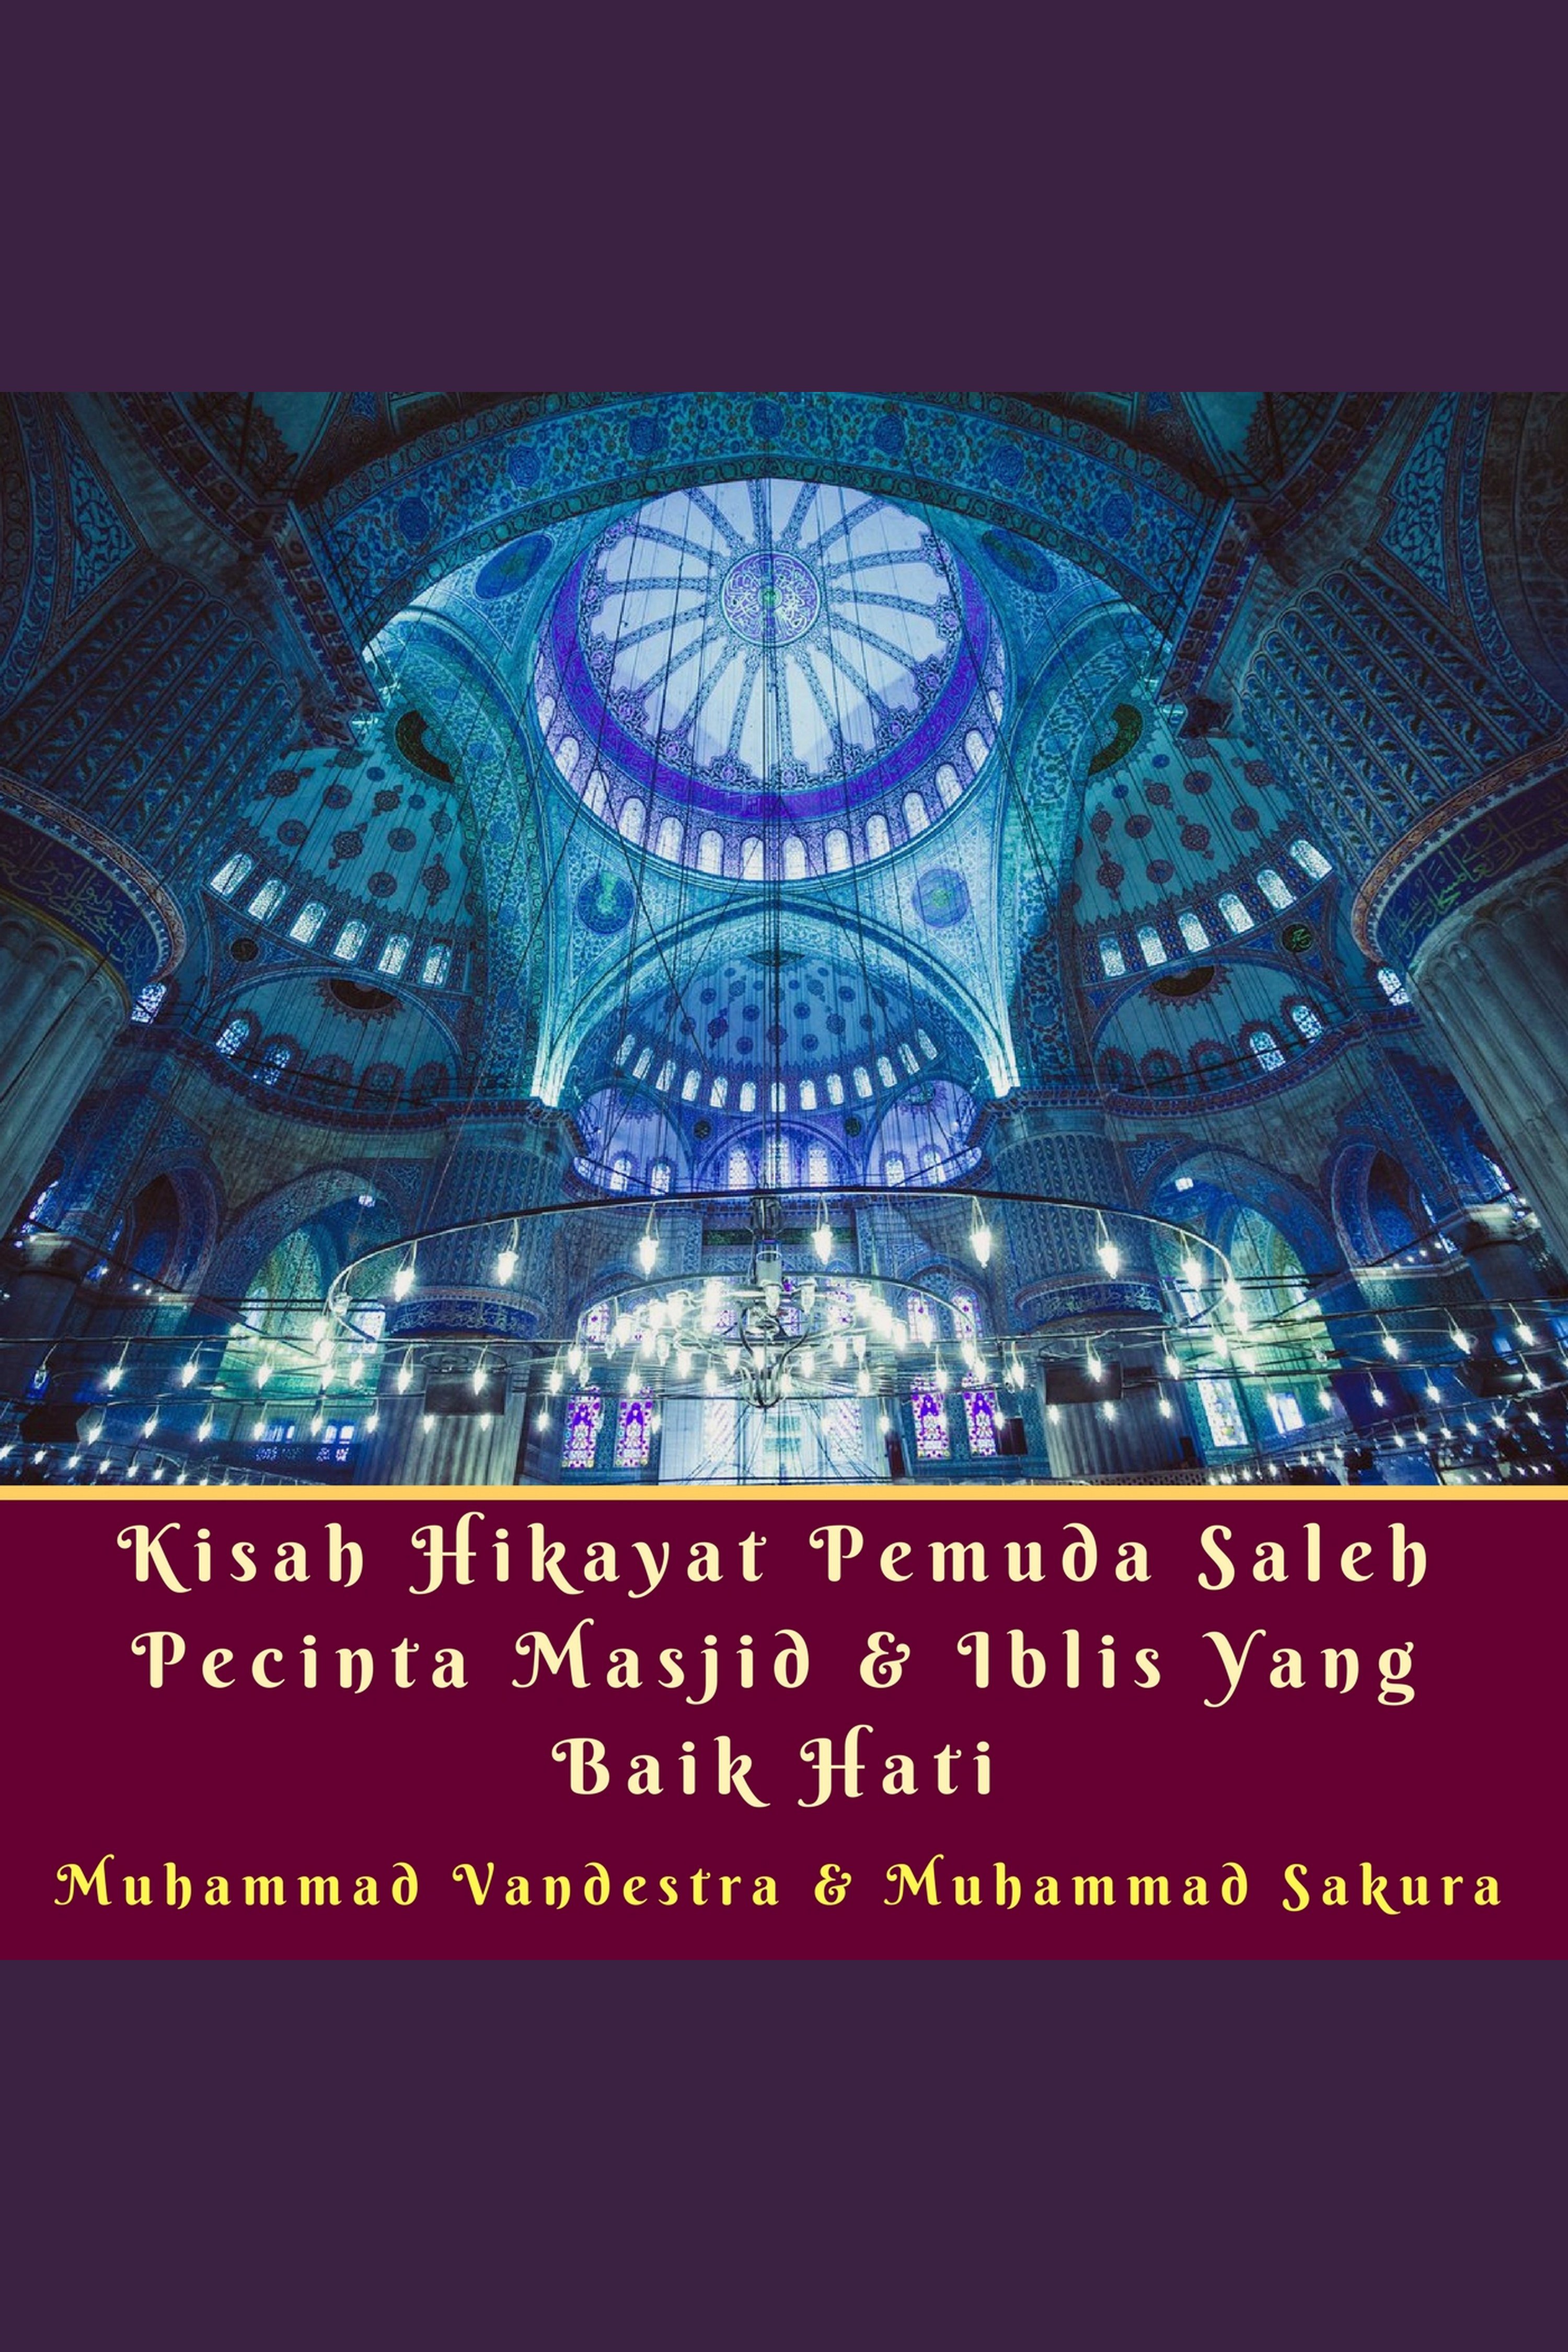 Kisah Hikayat Pemuda Saleh Pecinta Masjid & Iblis yang Baik Hati cover image